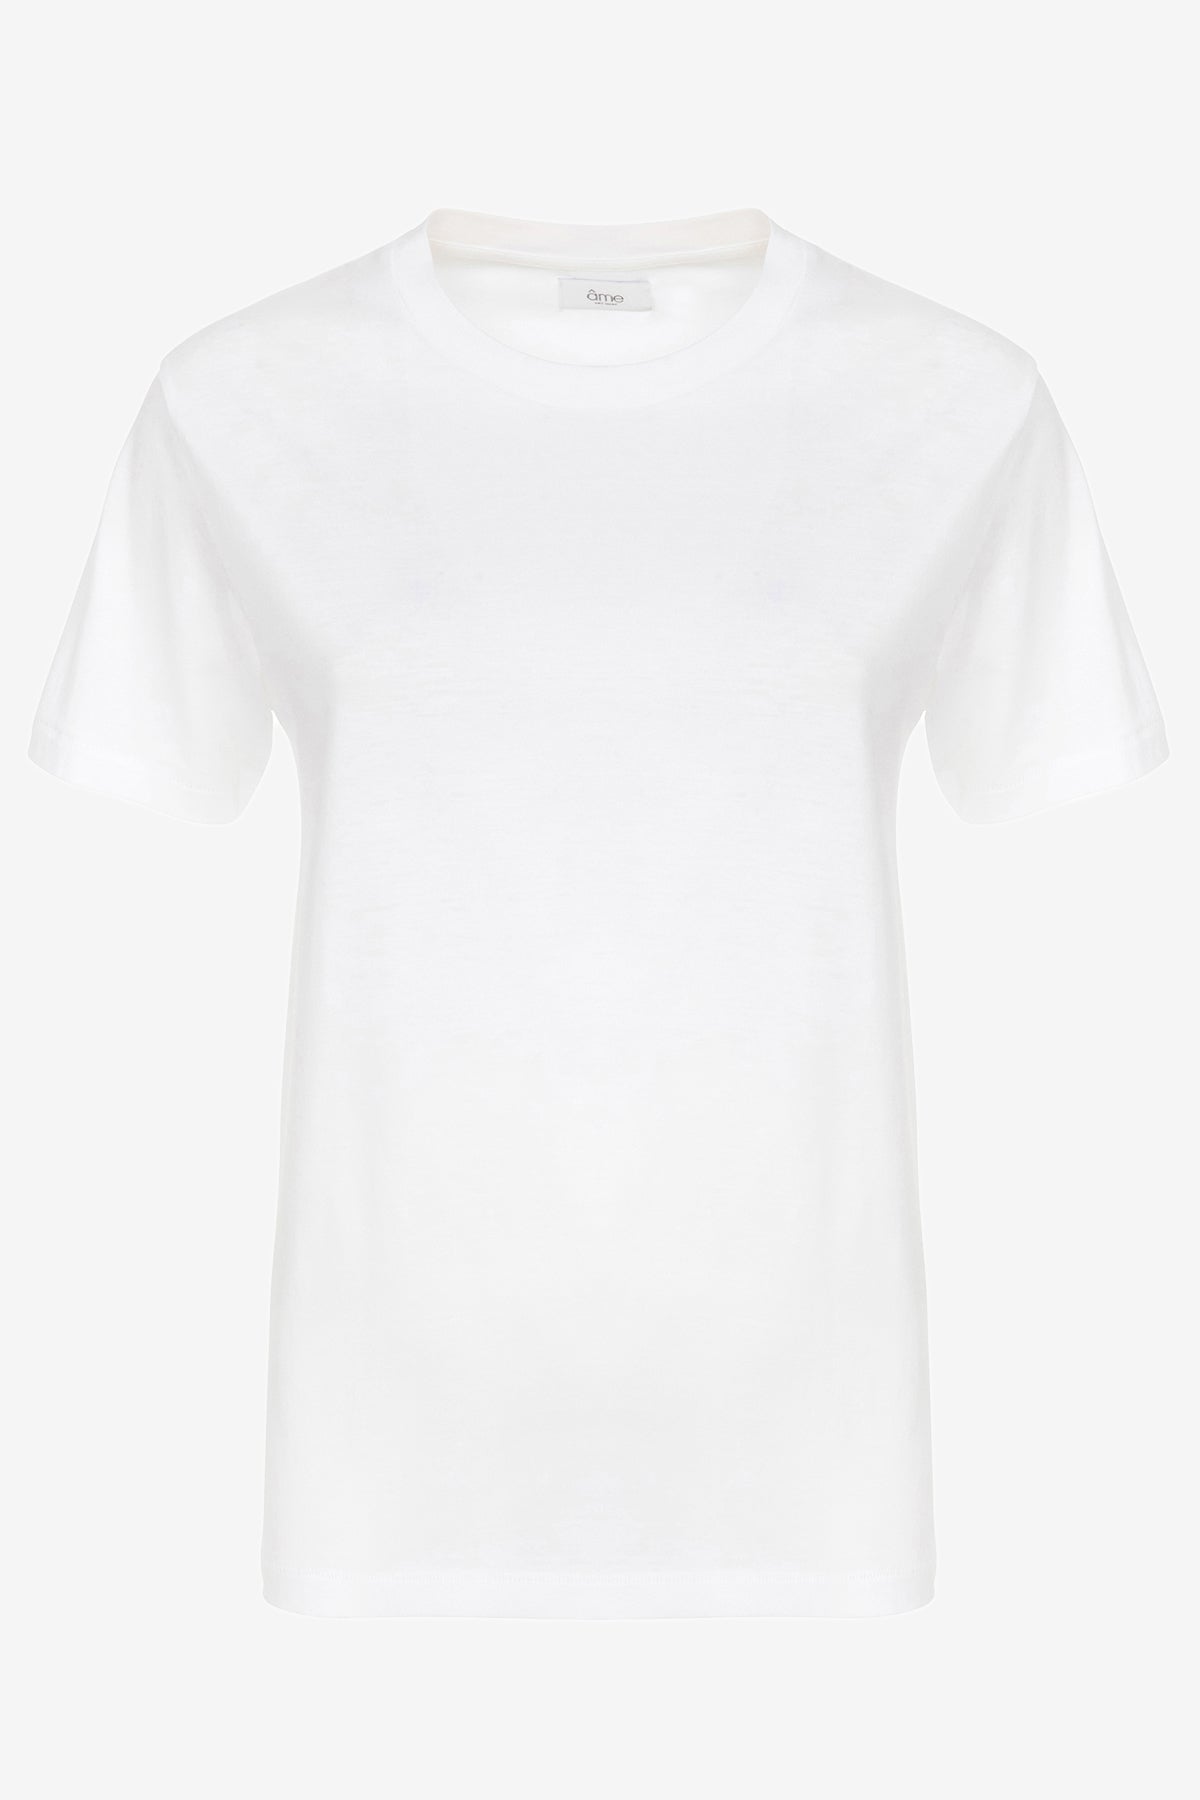 Julia T-shirt | White – Âme antwerp